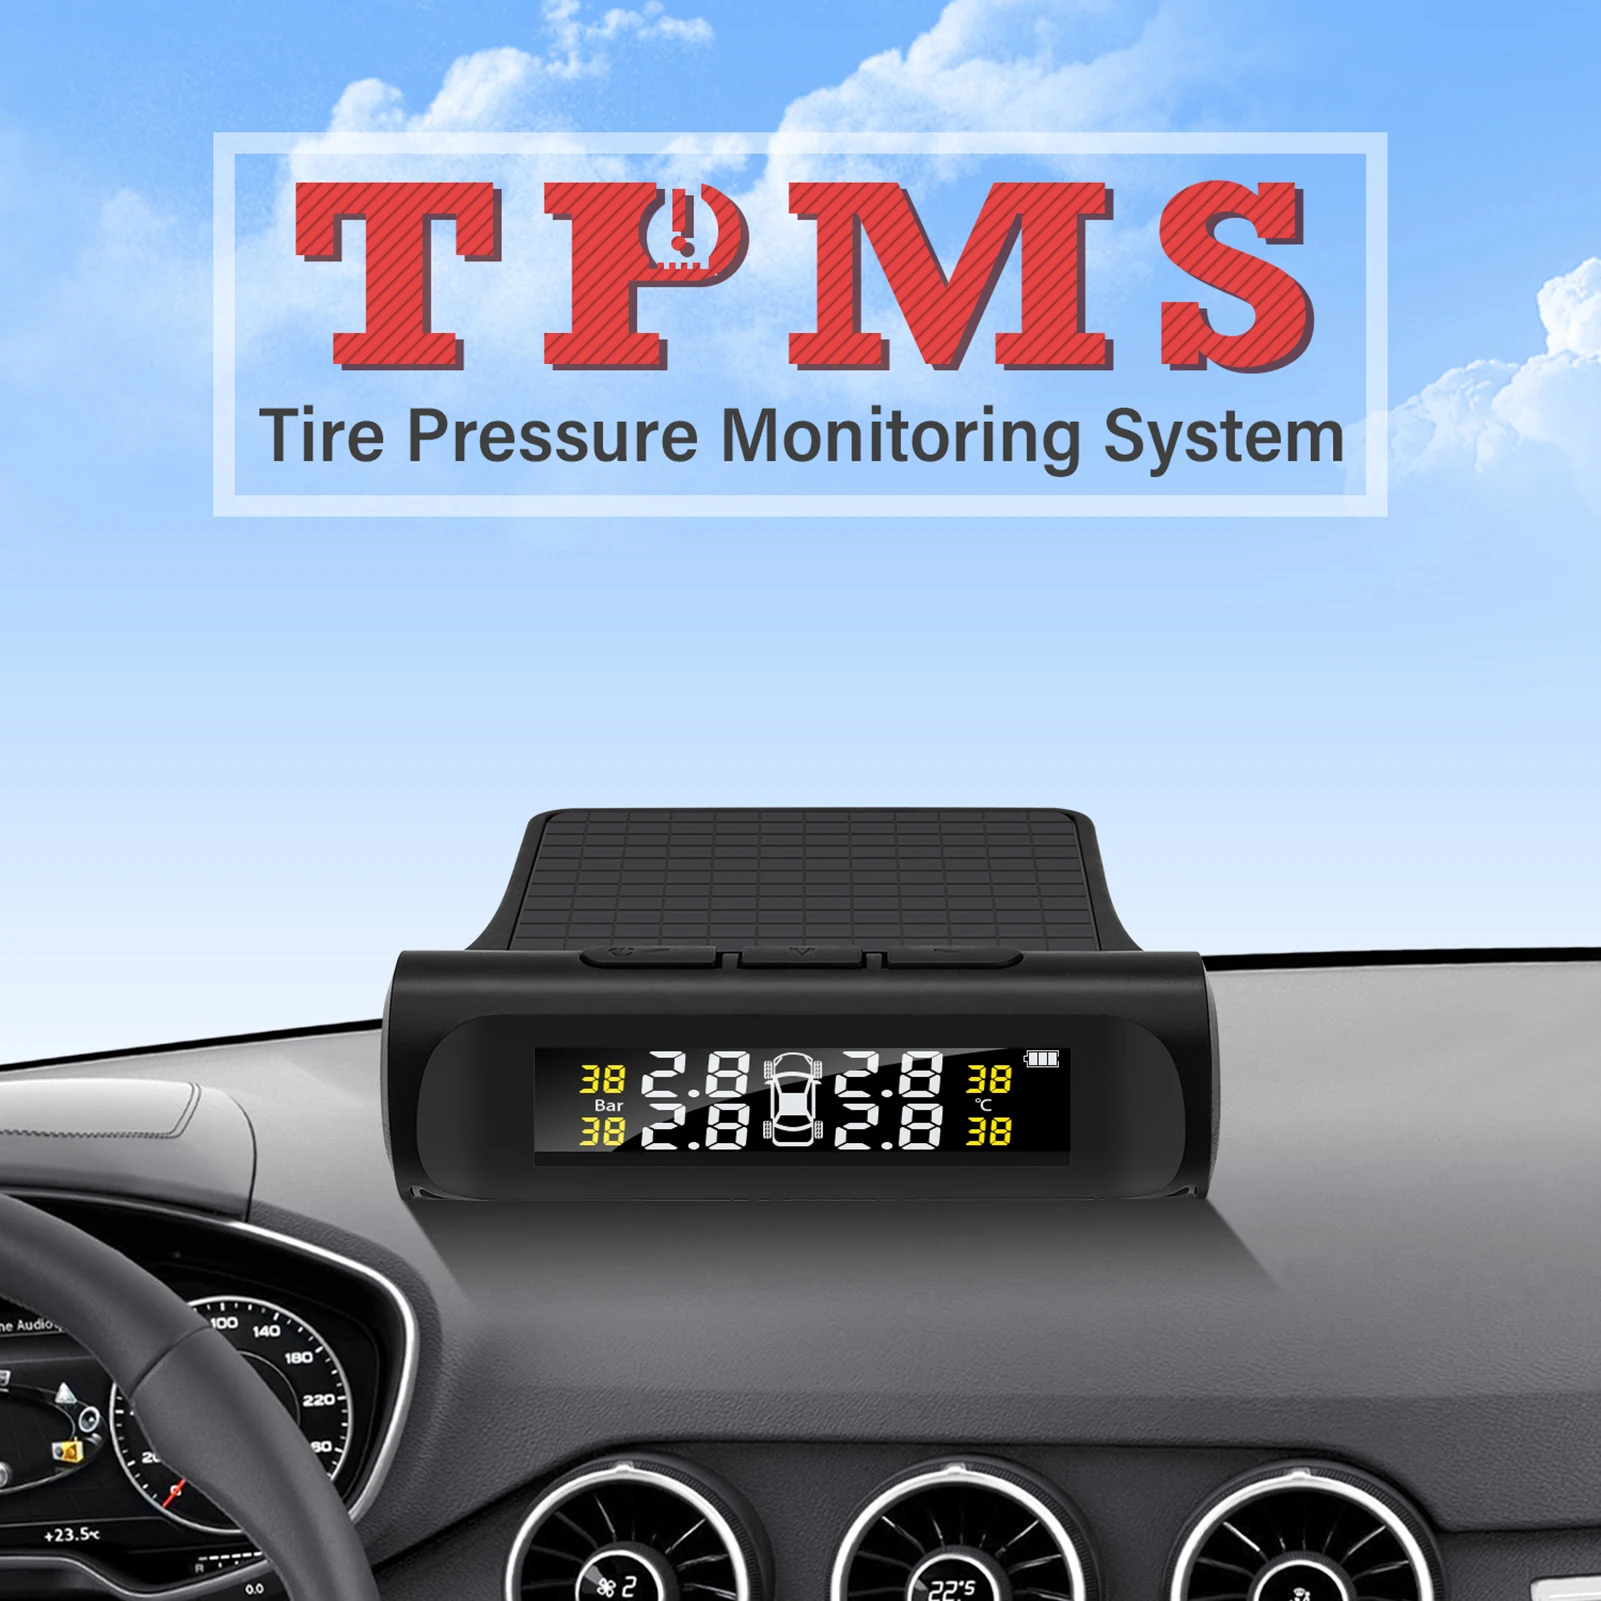 

Система контроля давления в шинах TPMS с 4 внешними датчиками и дисплеем в режиме реального времени